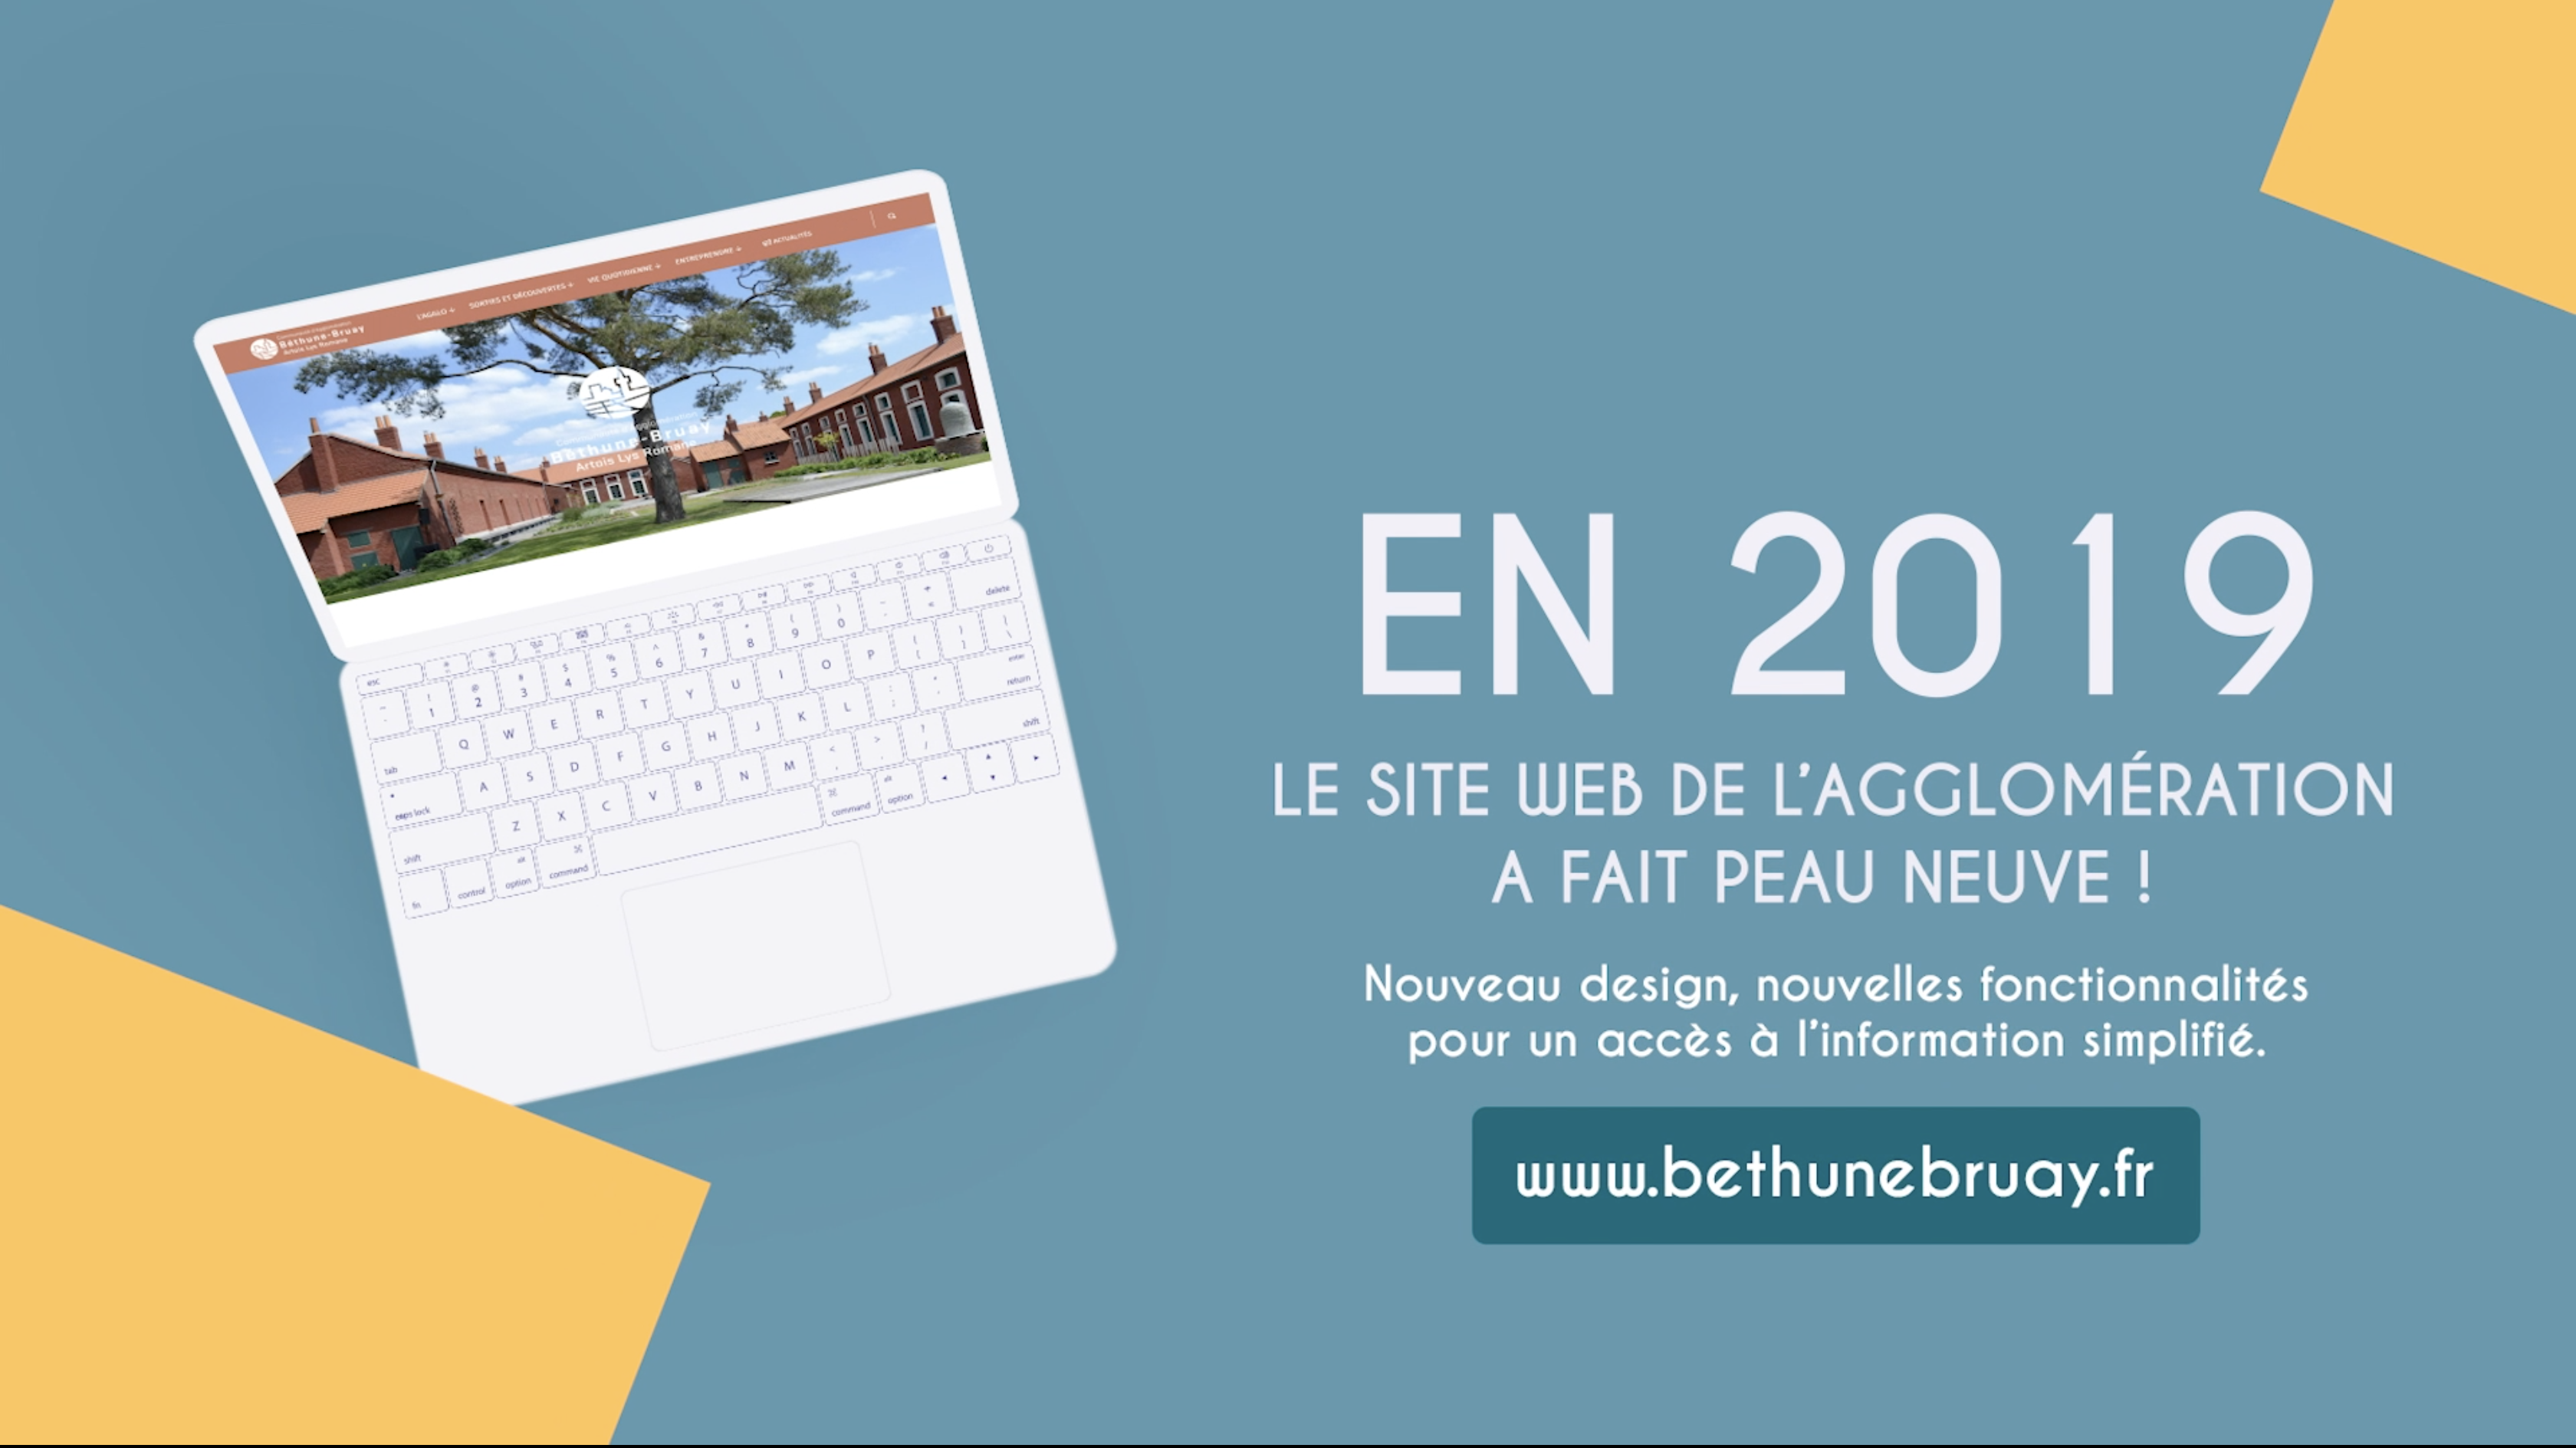 Retrospective 2019 - Communauté d'Agglomération de Béthune-Bruay, Artois Lys Romane - Agence GUS